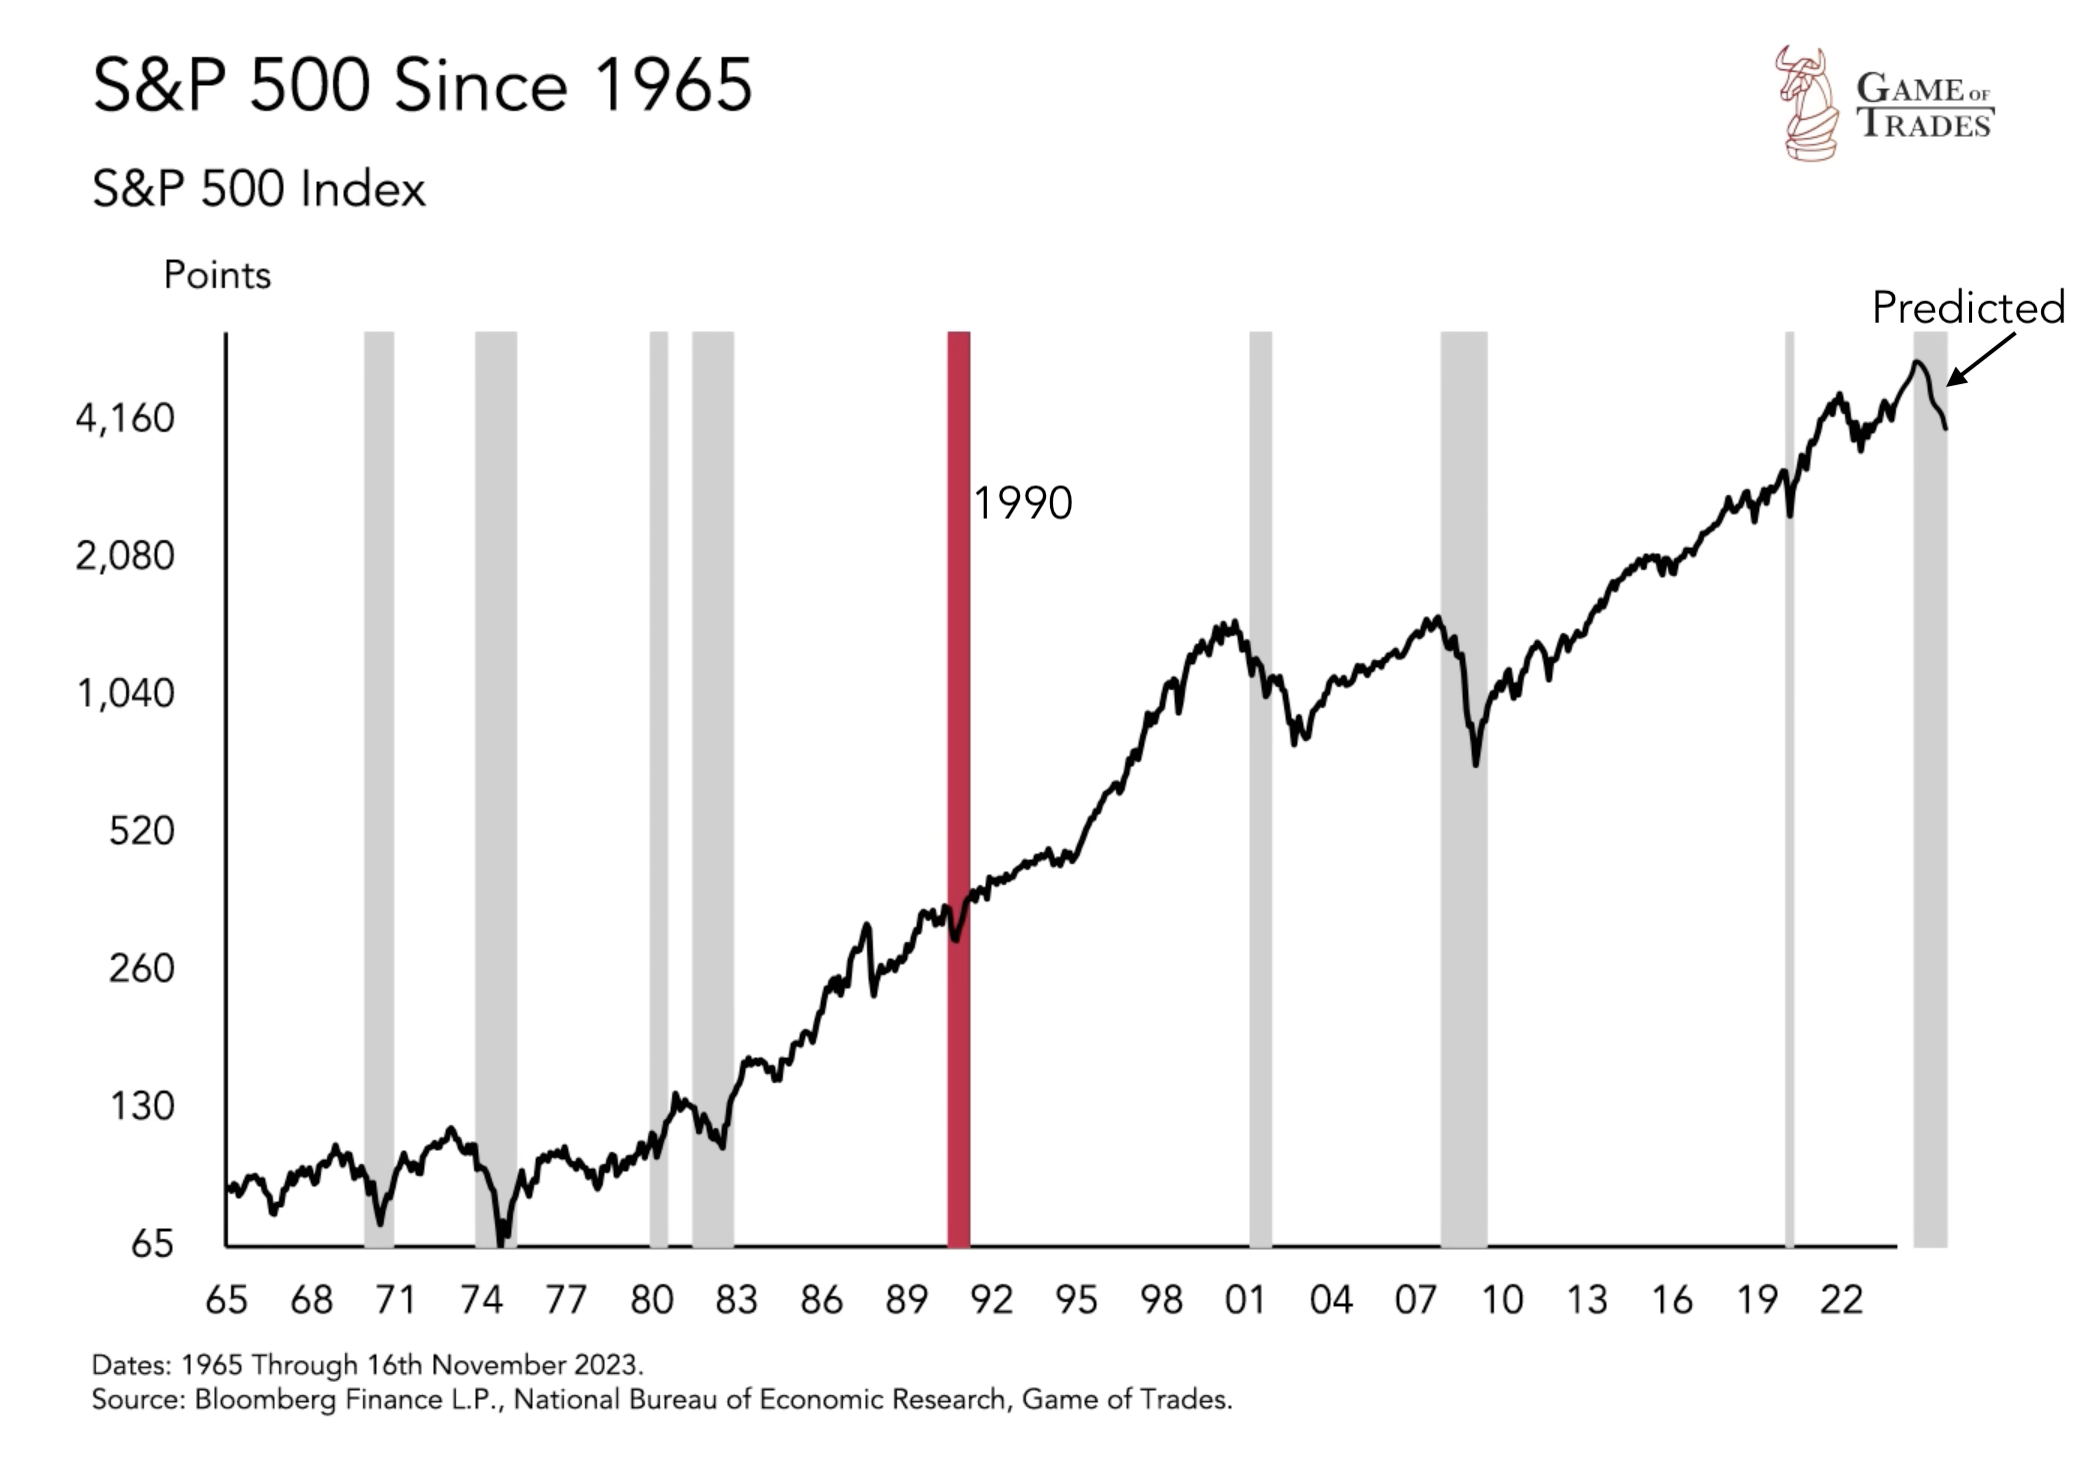 S&P 500 since 1965